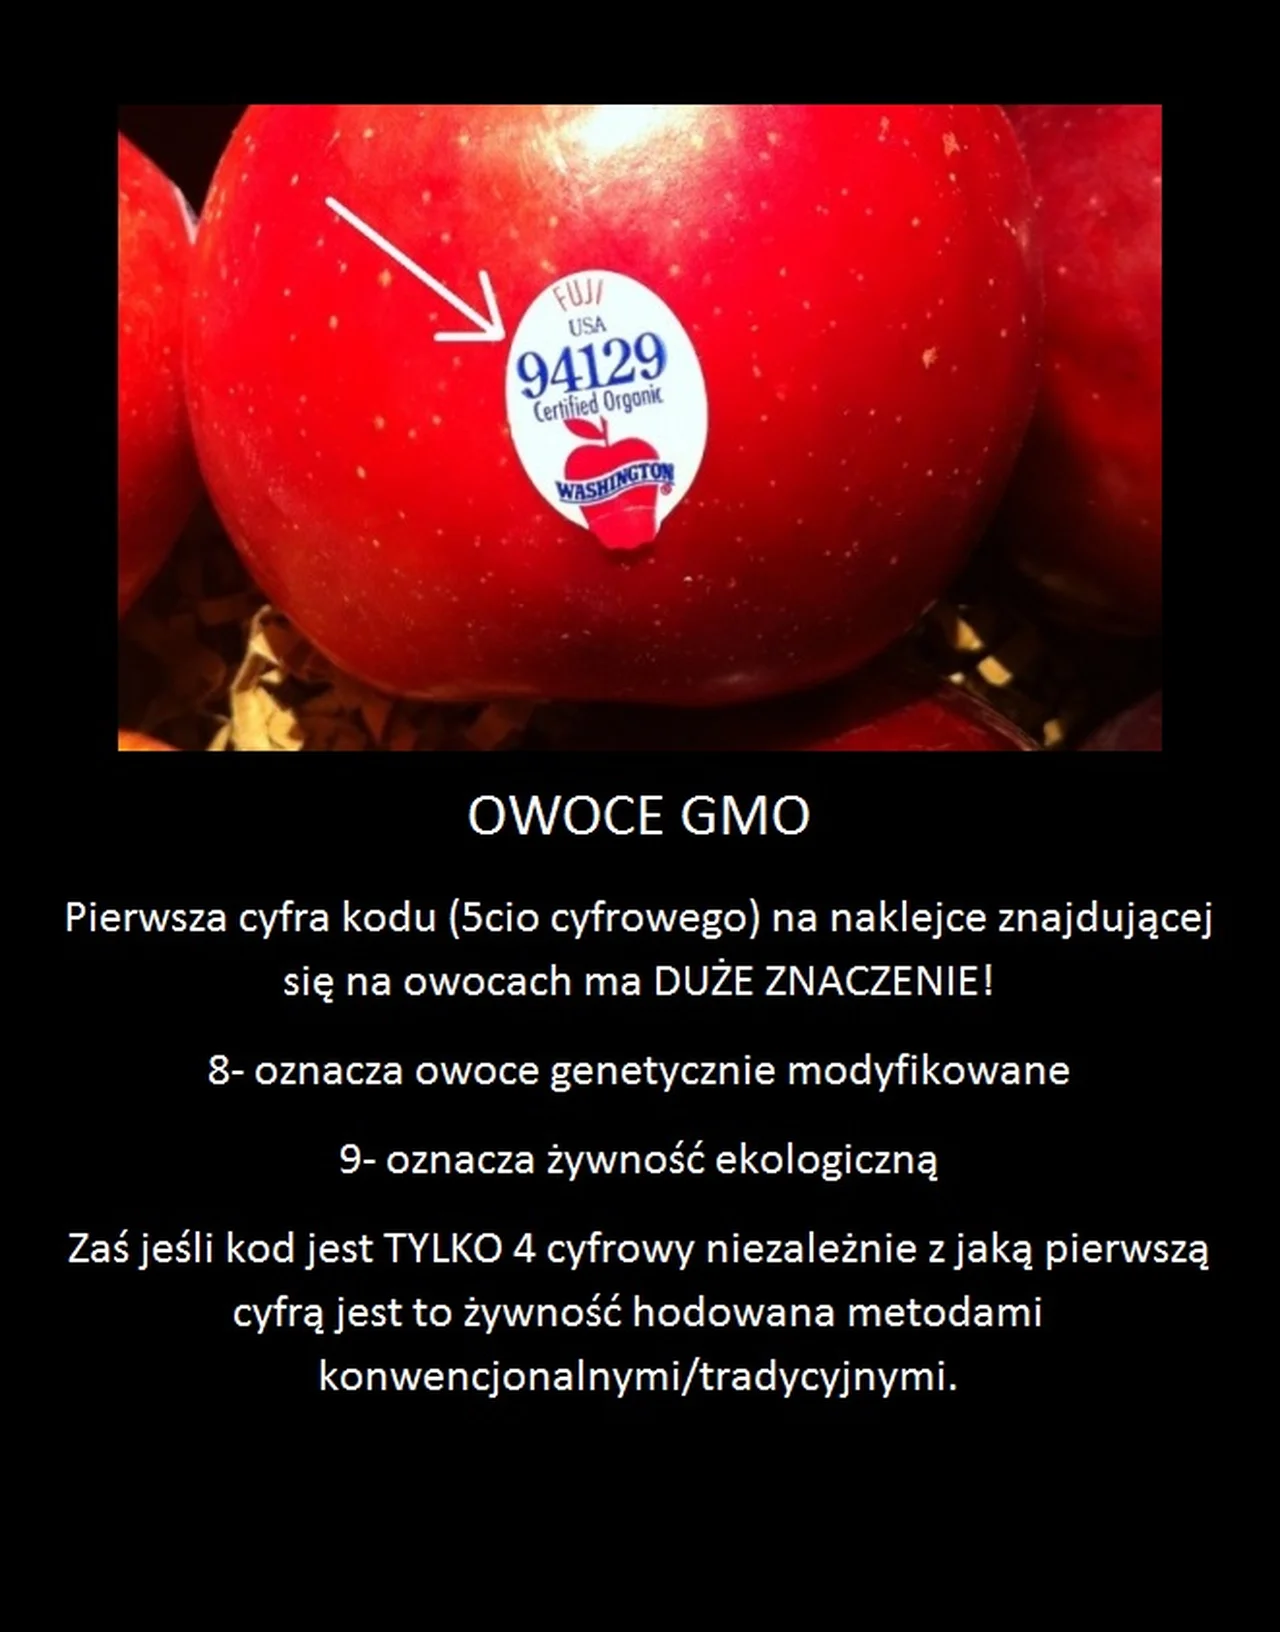 Jak poznać czy owoce są GMO